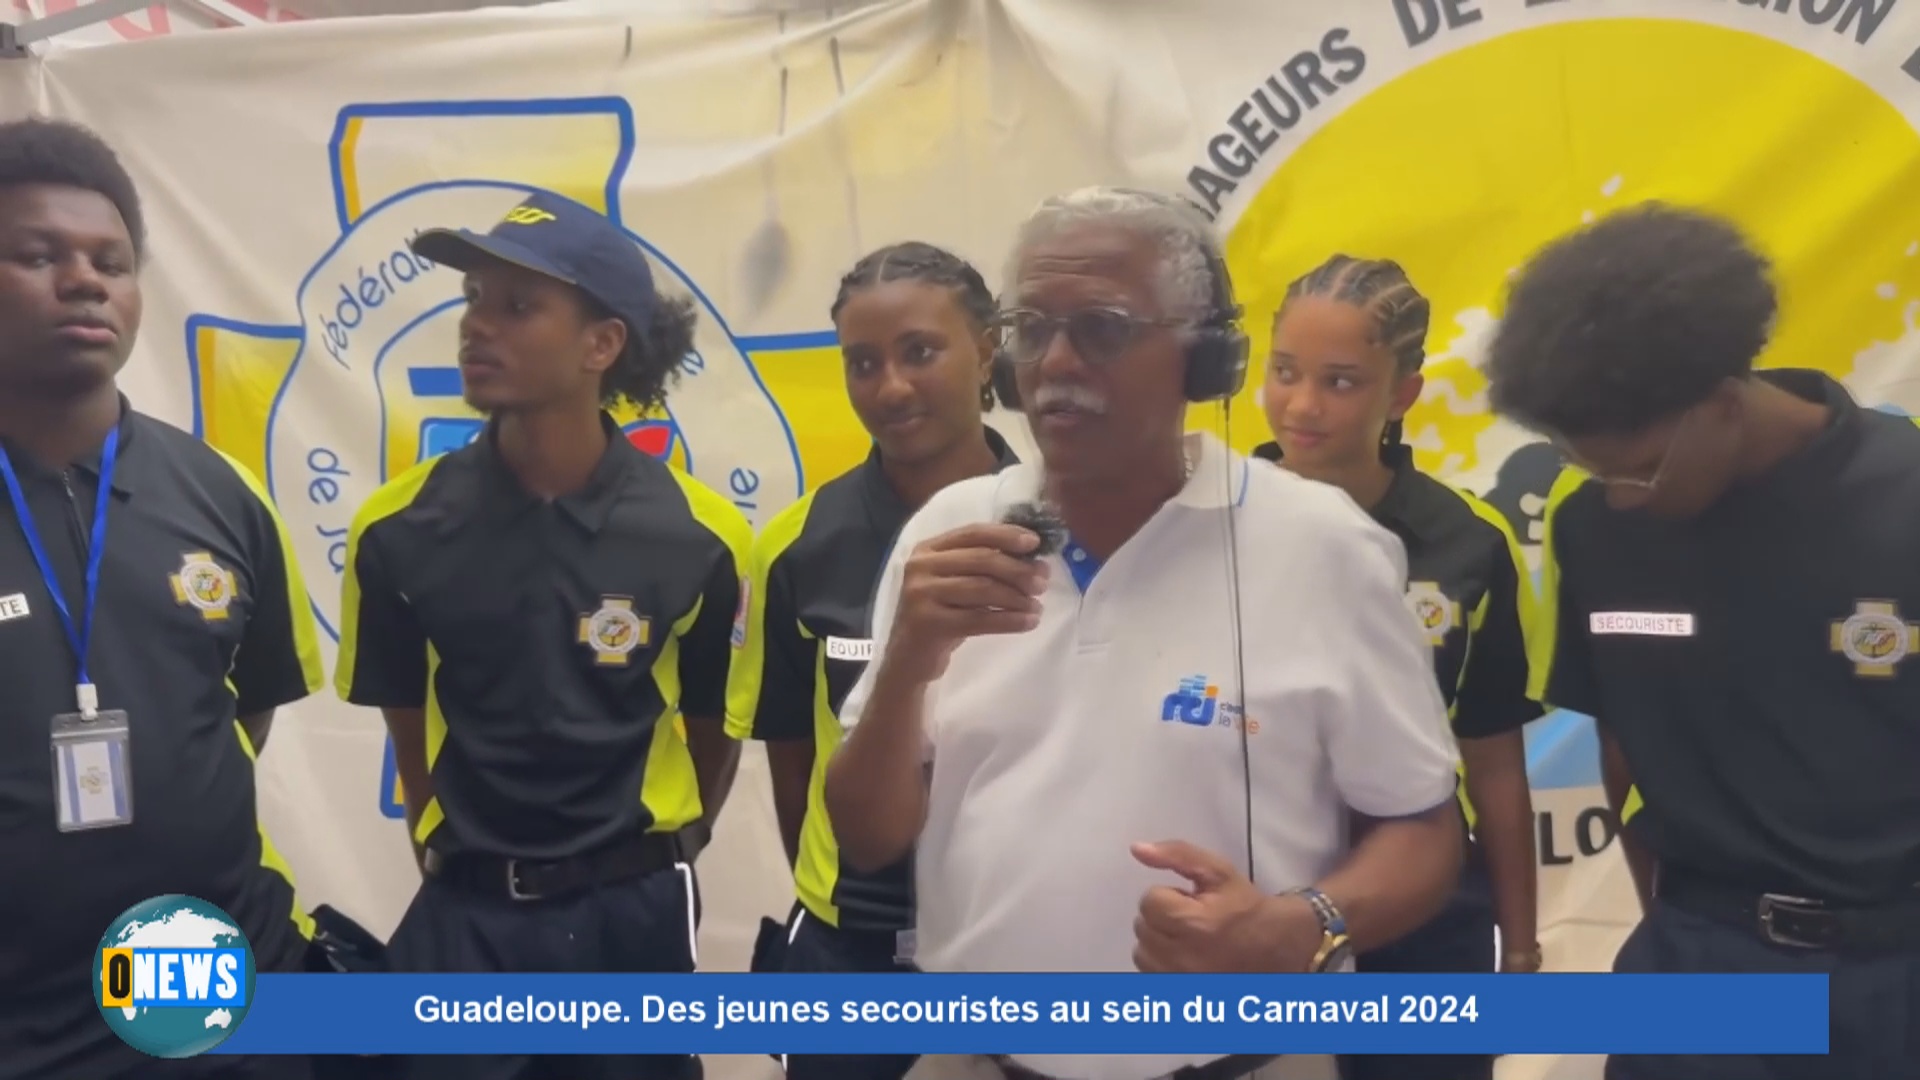 Guadeloupe Des jeunes secouristes au sein du Carnaval 2024